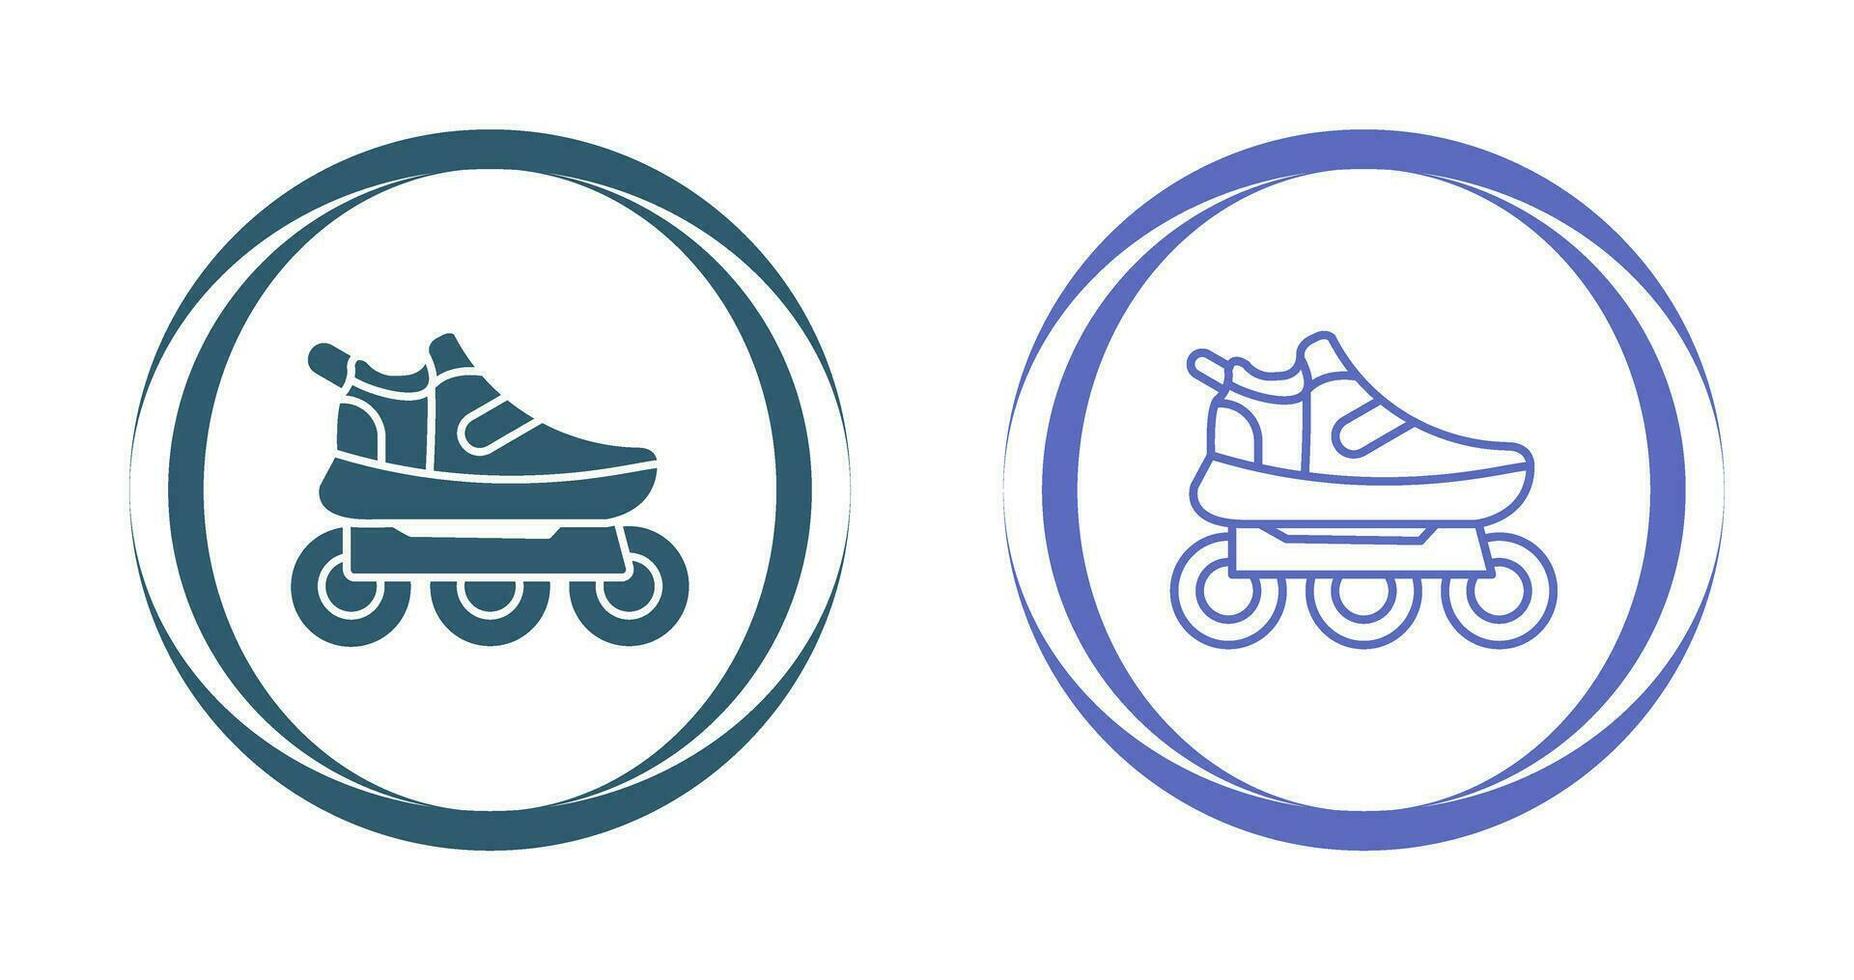 icône de vecteur de patins à roulettes